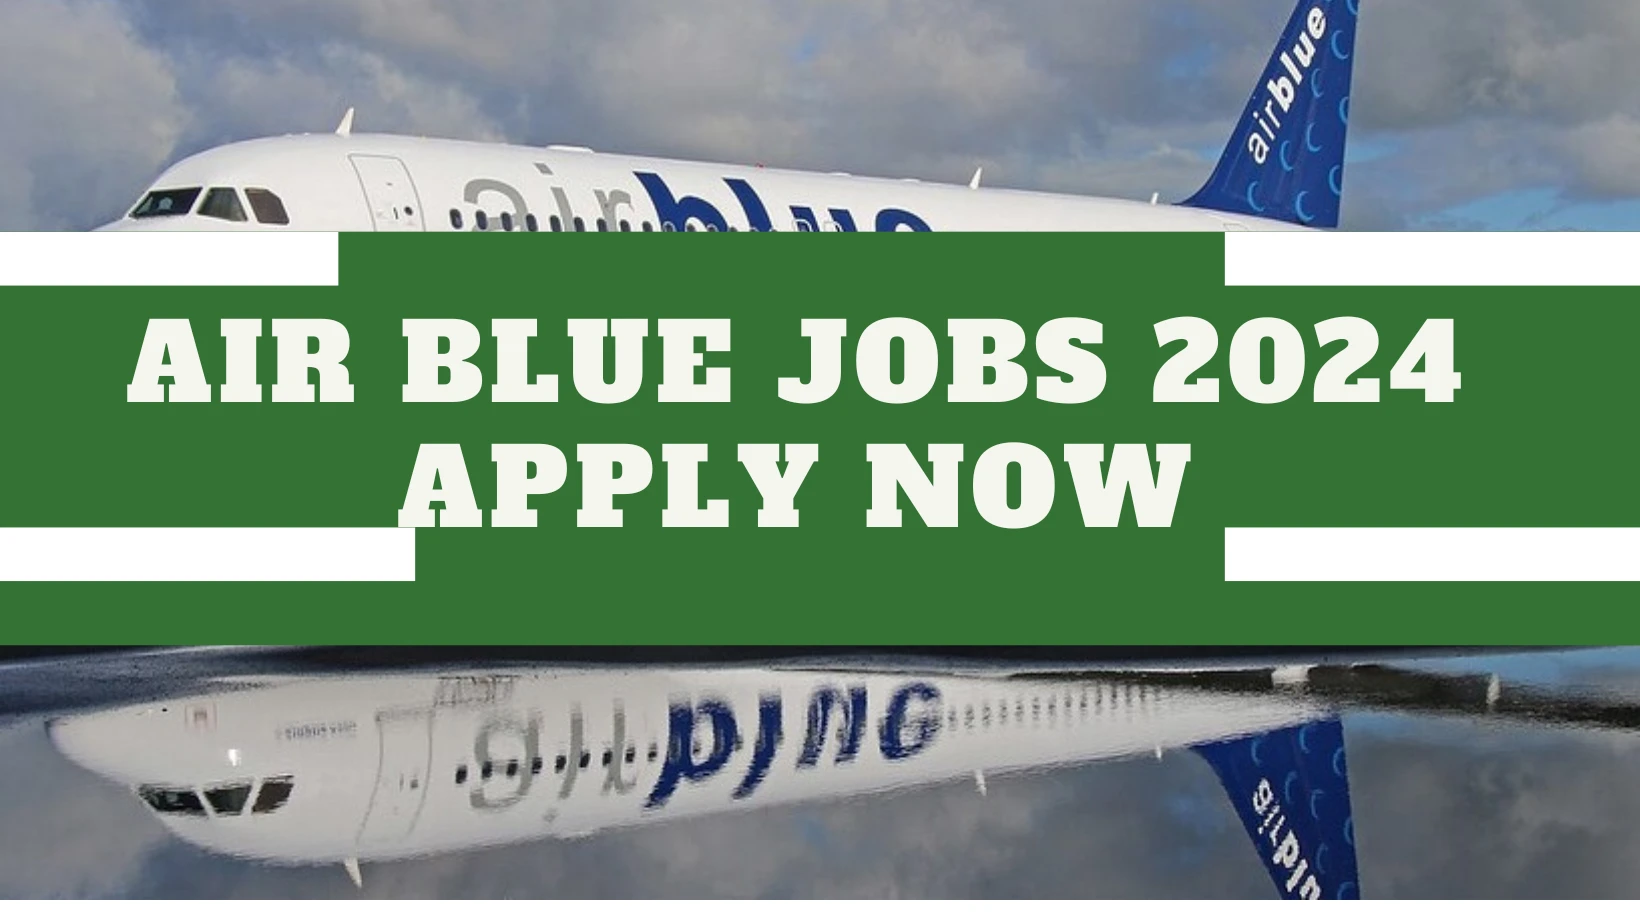 AirBlue-Jobs